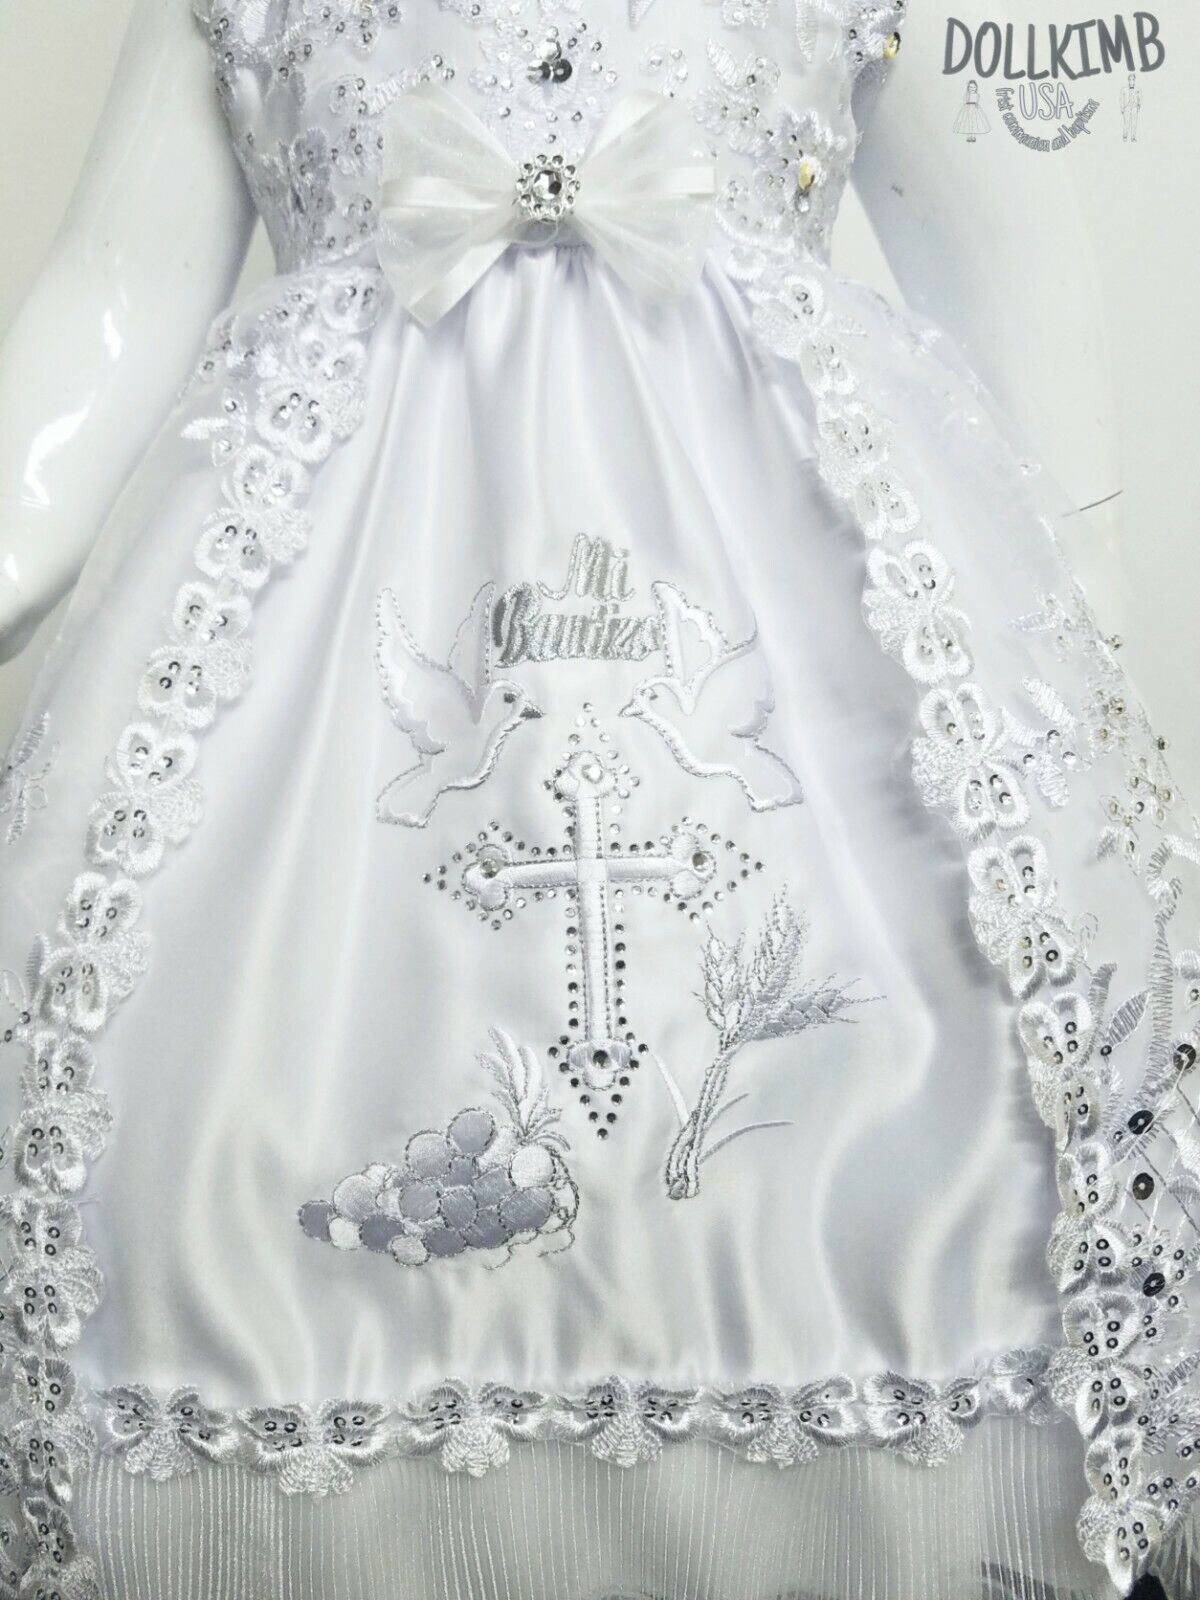 Vestido de bautizo para niÑa. Bordado. Girl's embroidered dress for  christening | eBay